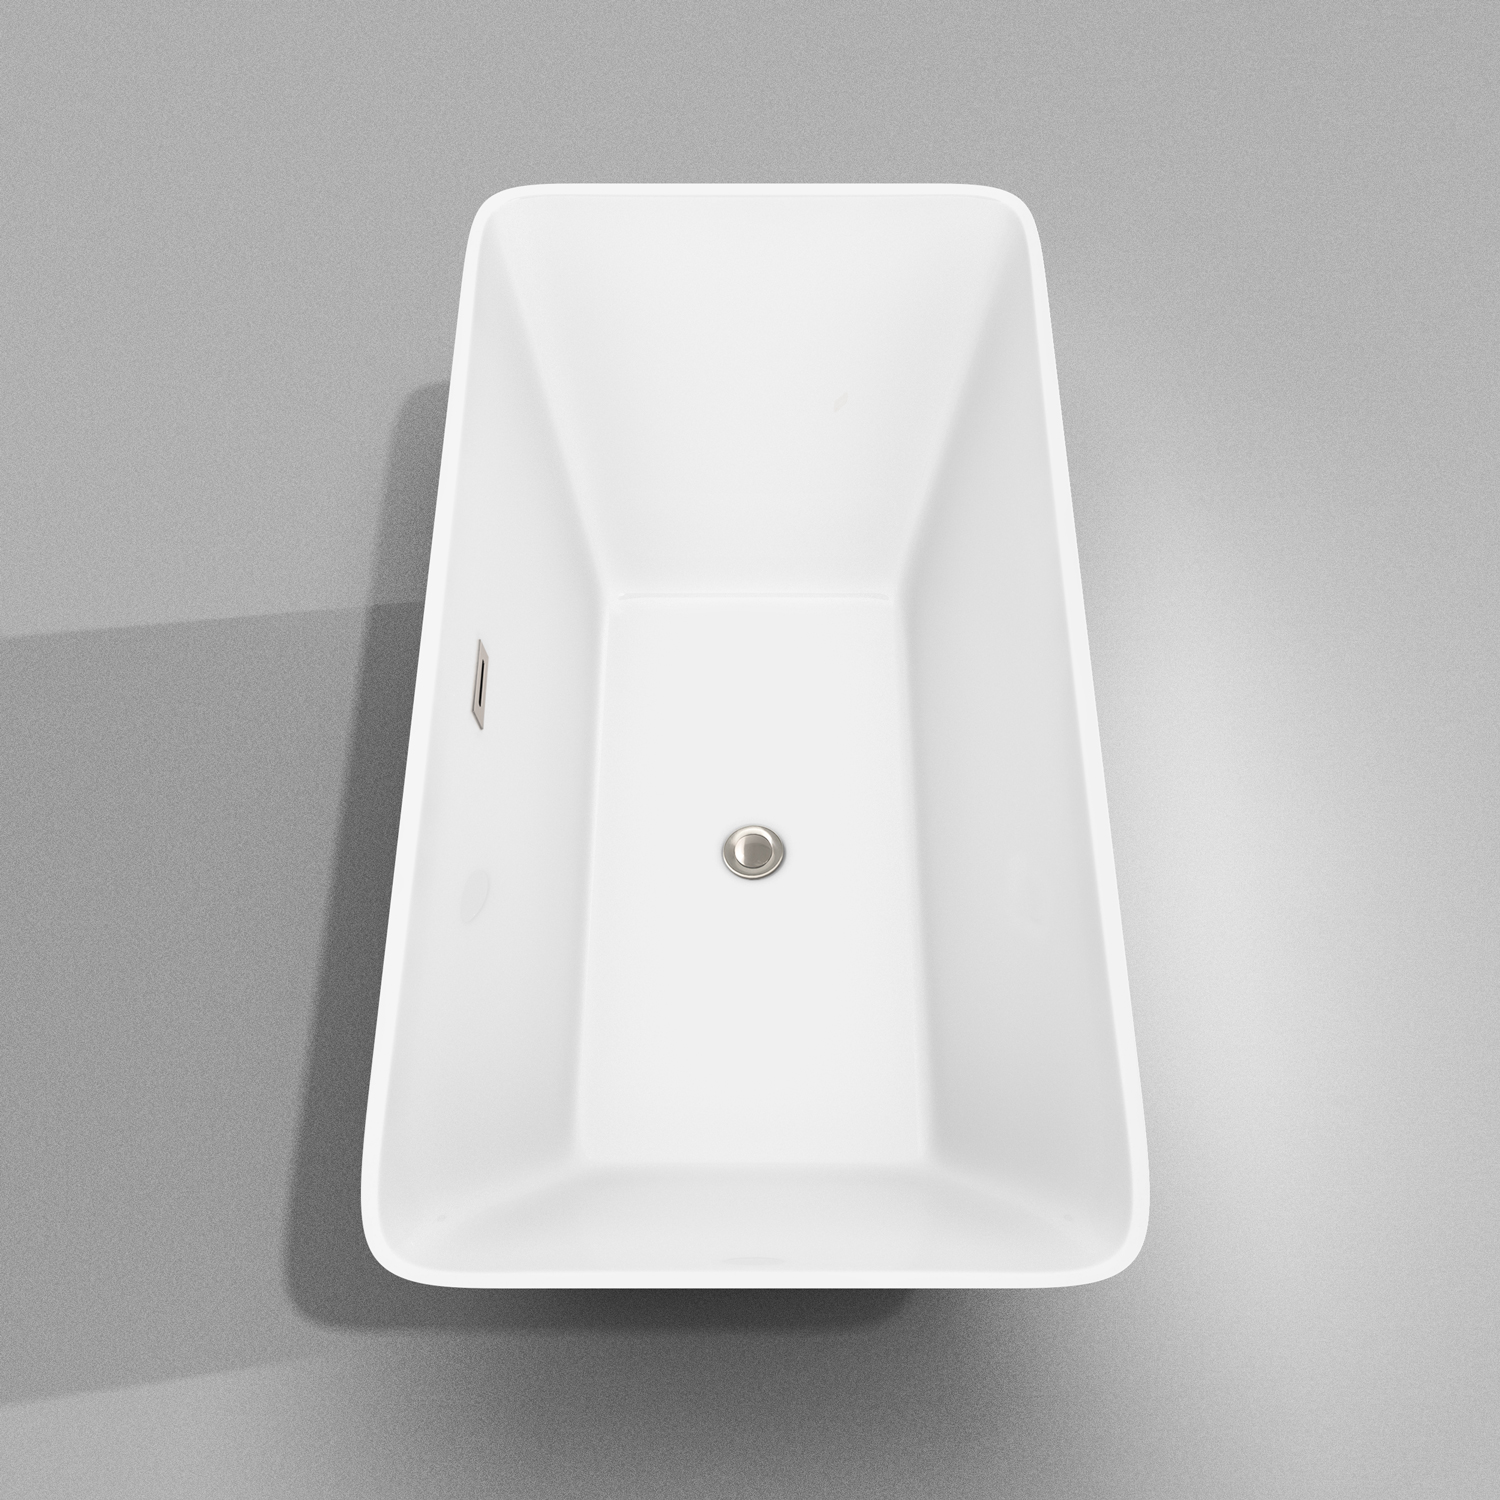 tiffany 59" small soaking bathtub by wyndham collection - white